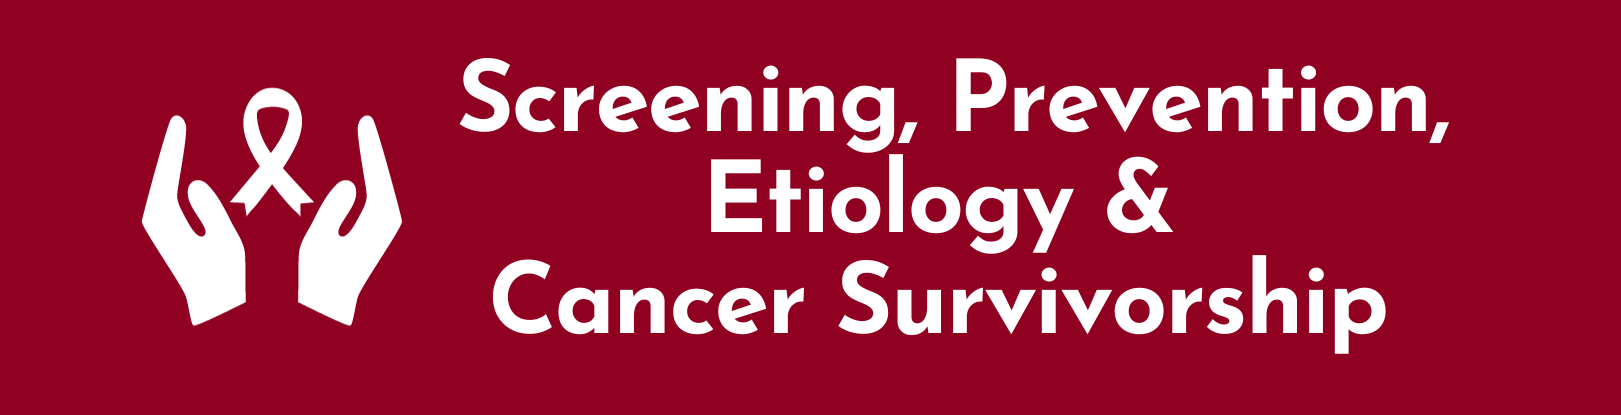 Screening, Prevention, Etiology & Cancer Survivorship